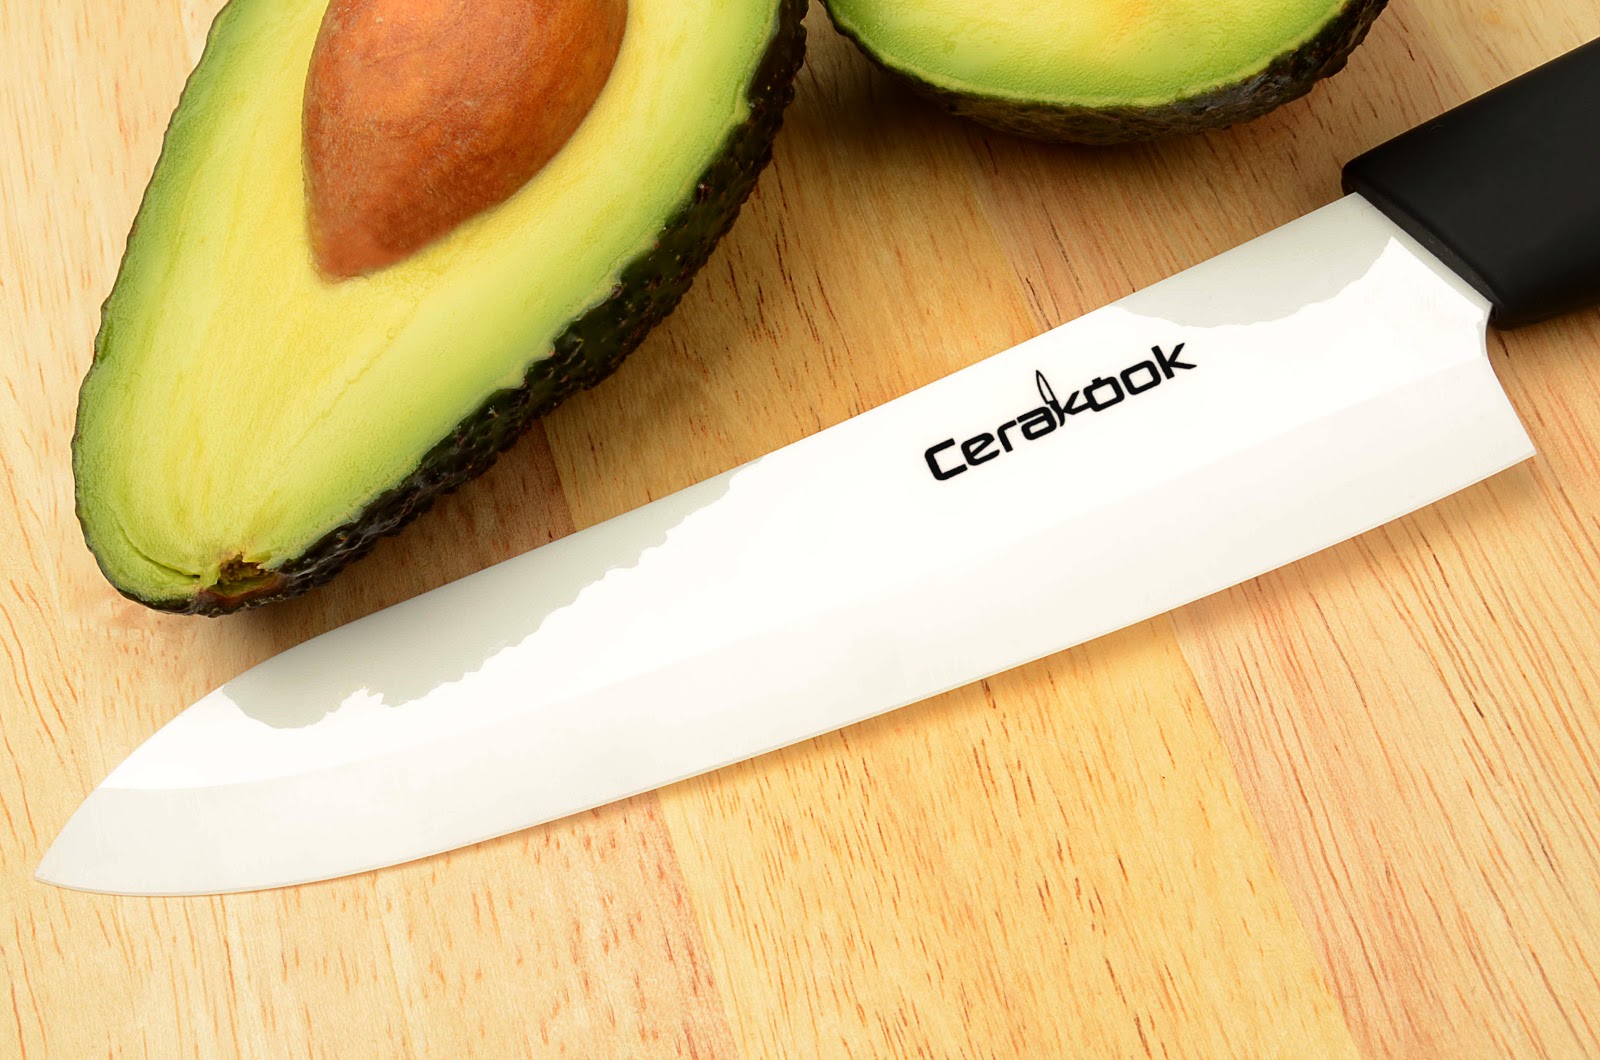 CeraKooks Ceramic Knife - Review